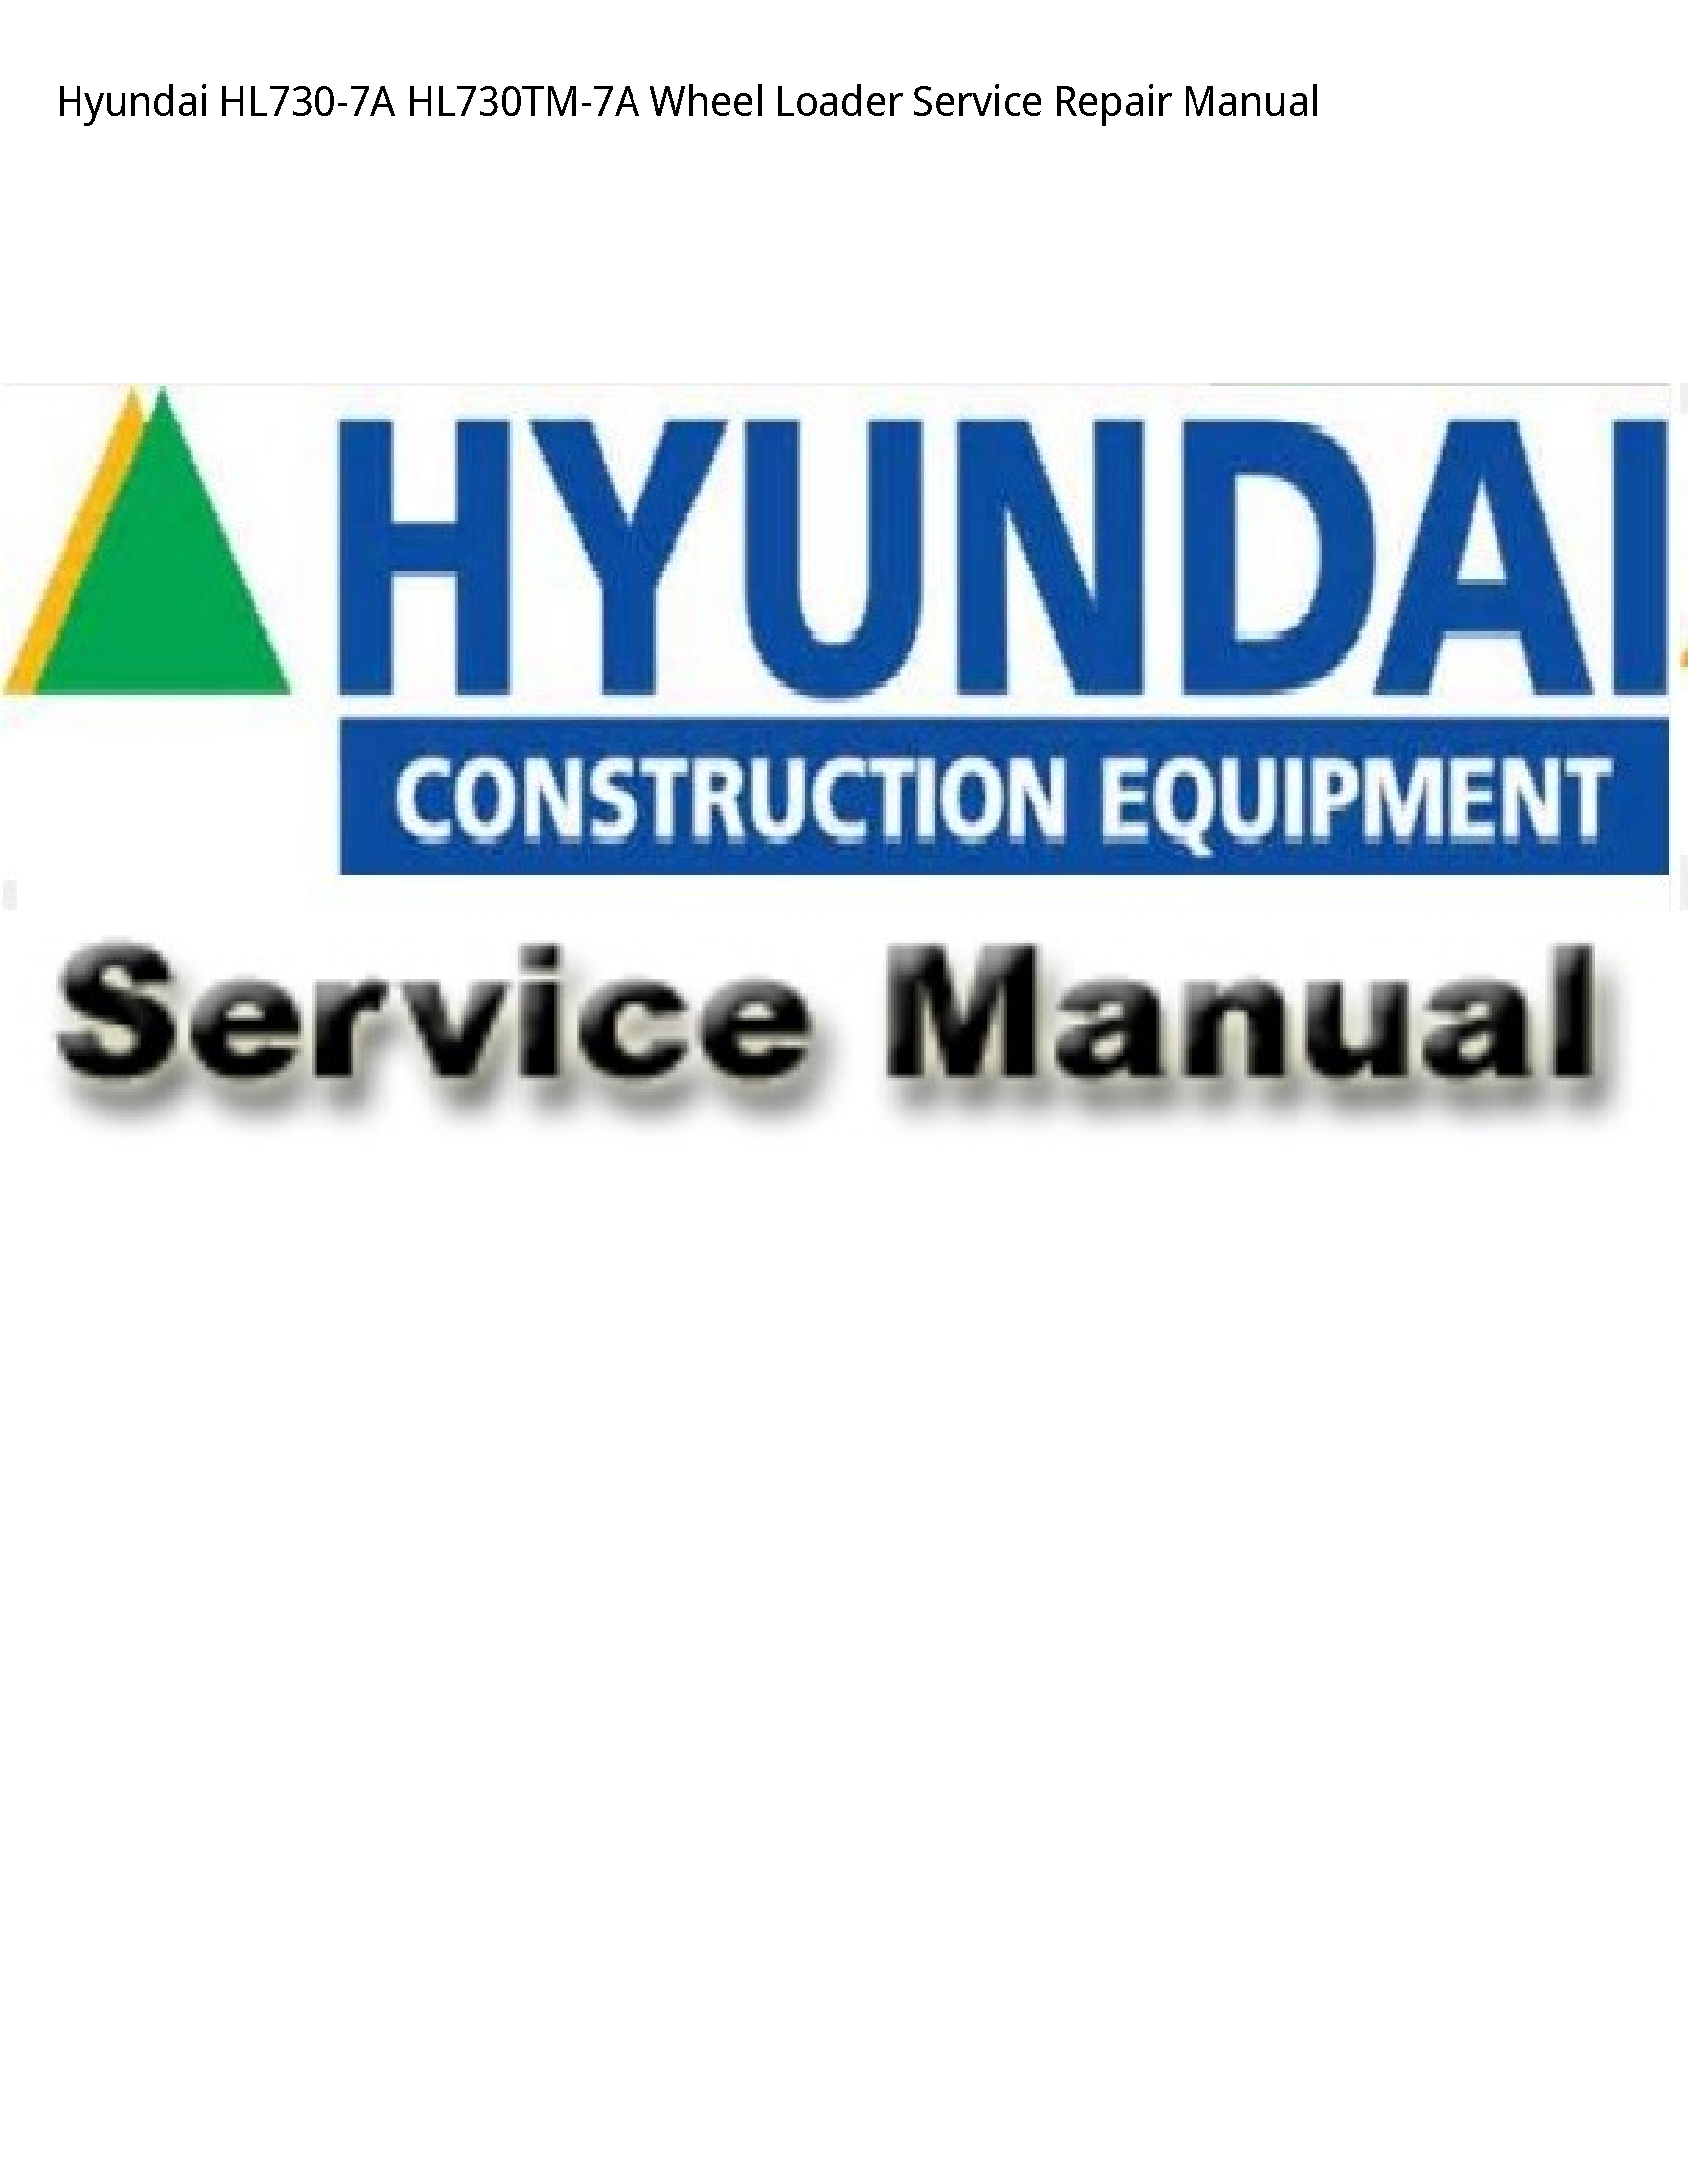 Hyundai HL730-7A Wheel Loader manual